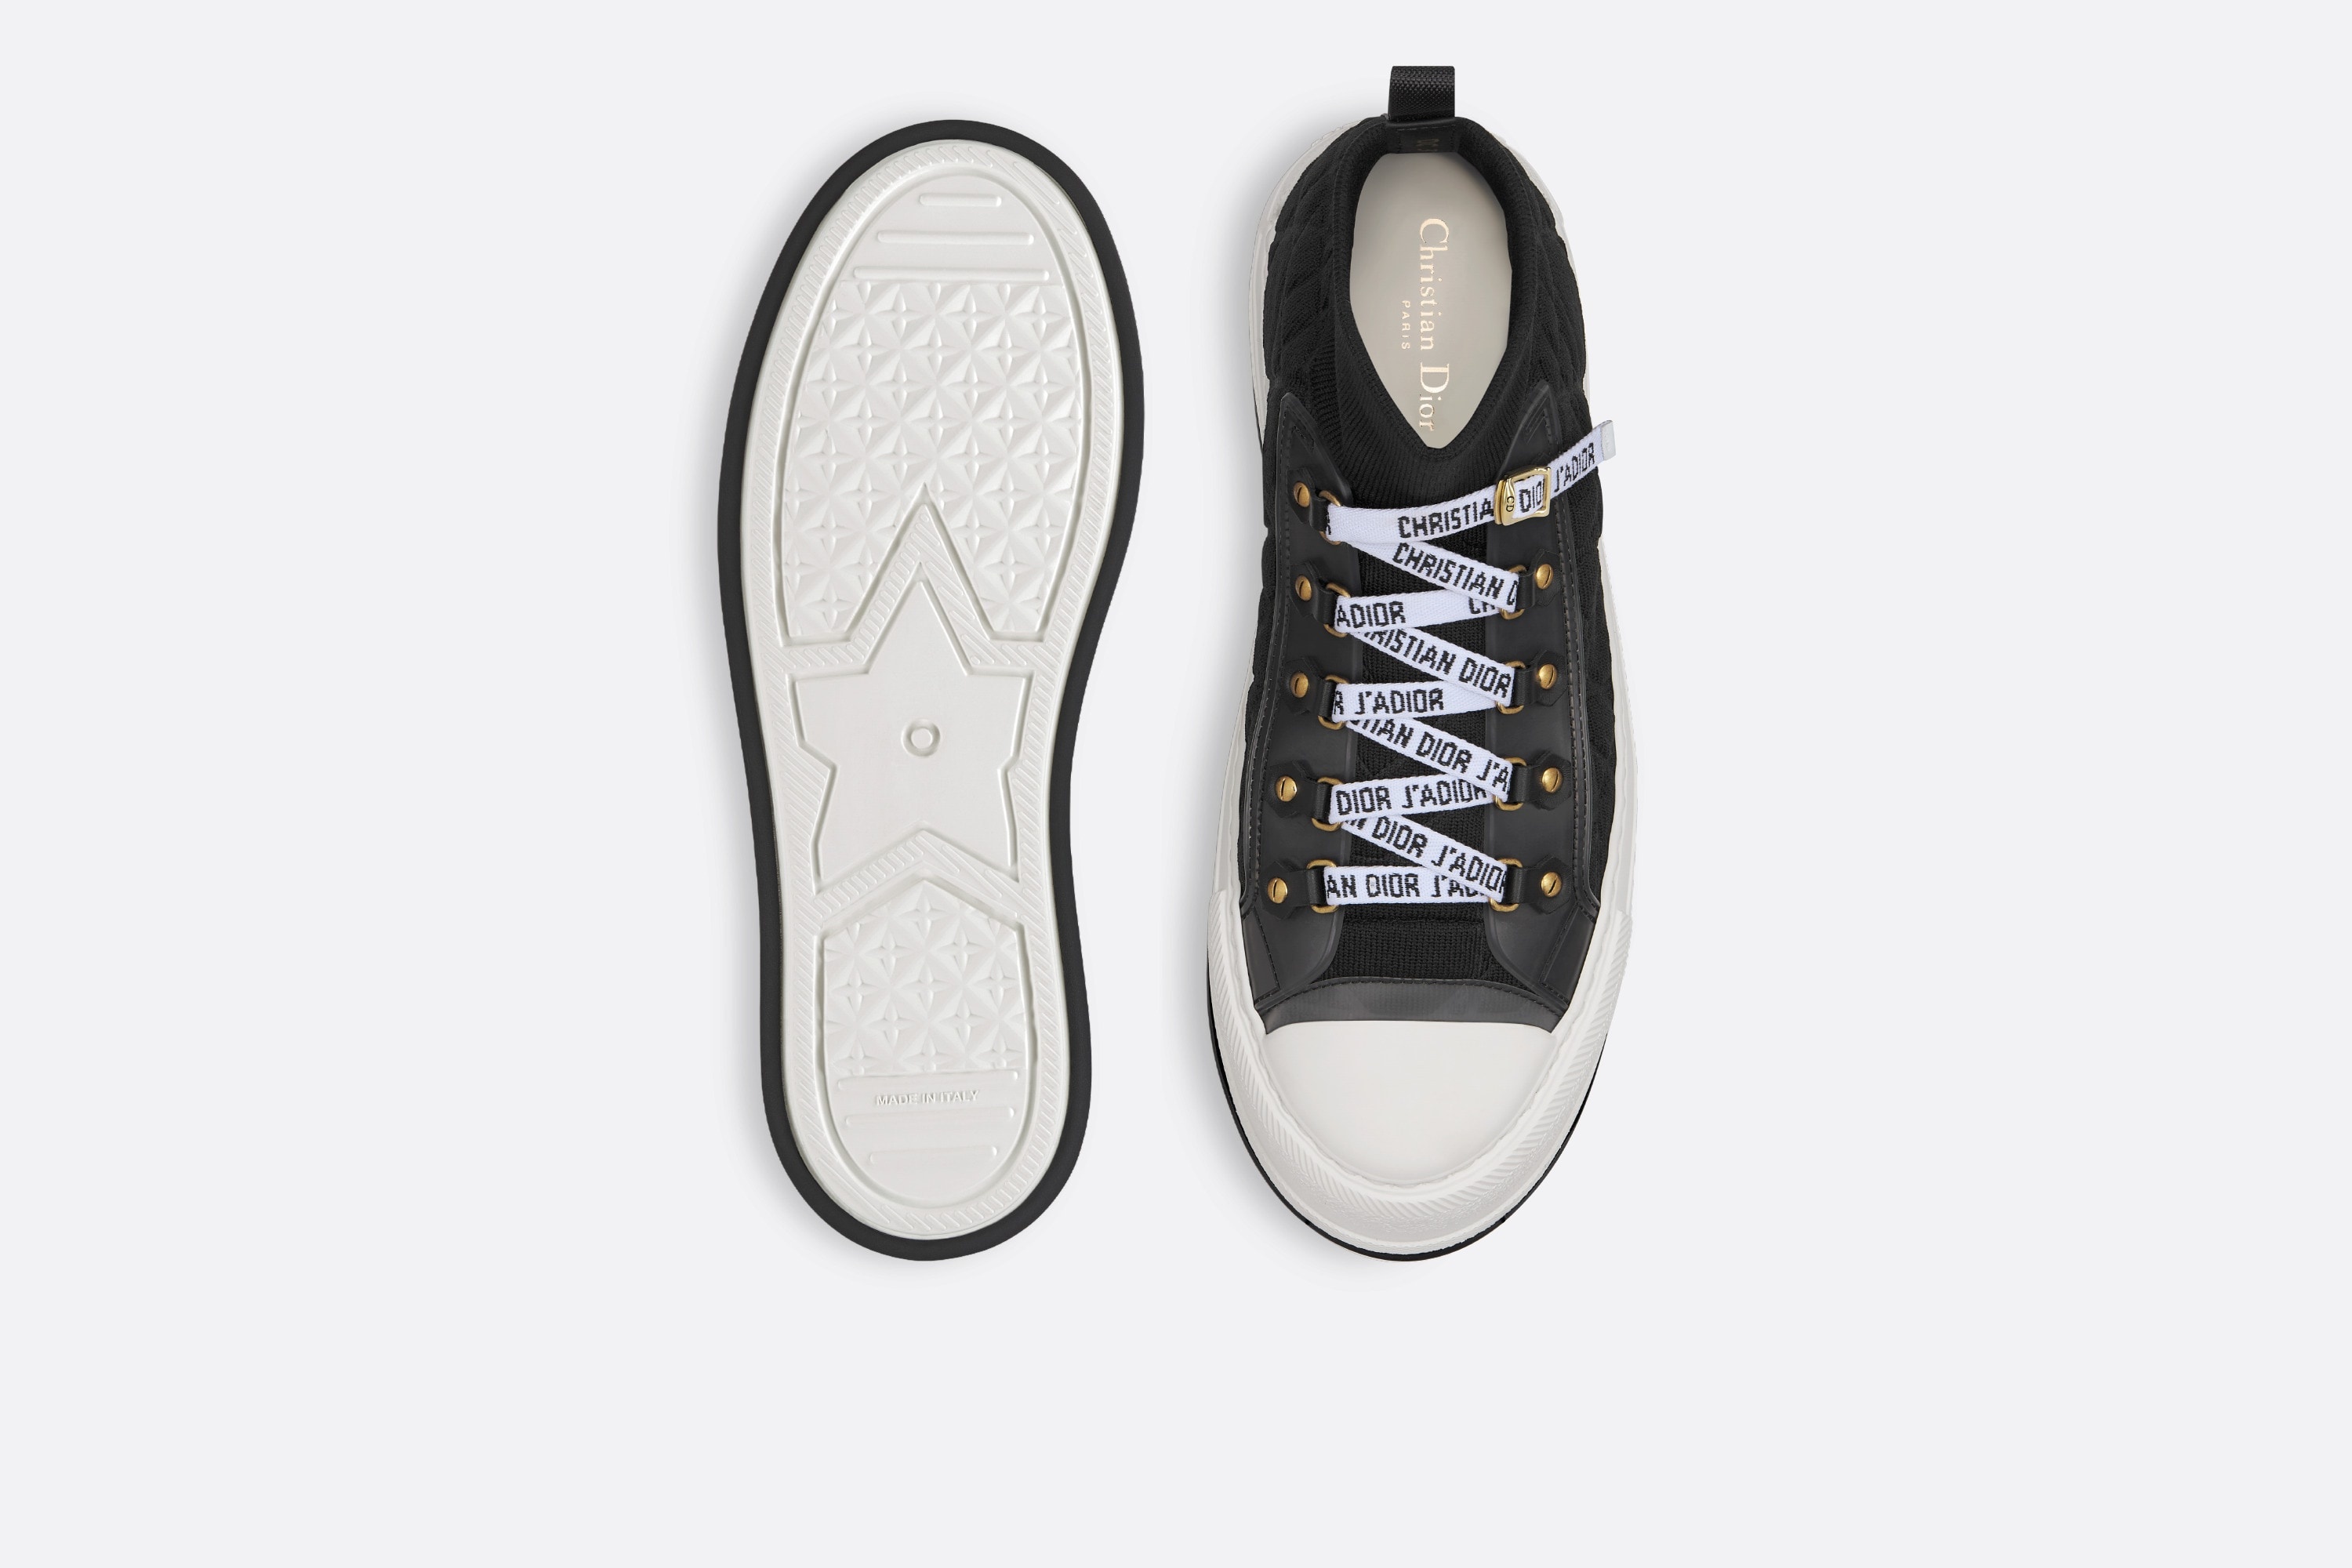 Walk'n'Dior Platform Sneaker - 7